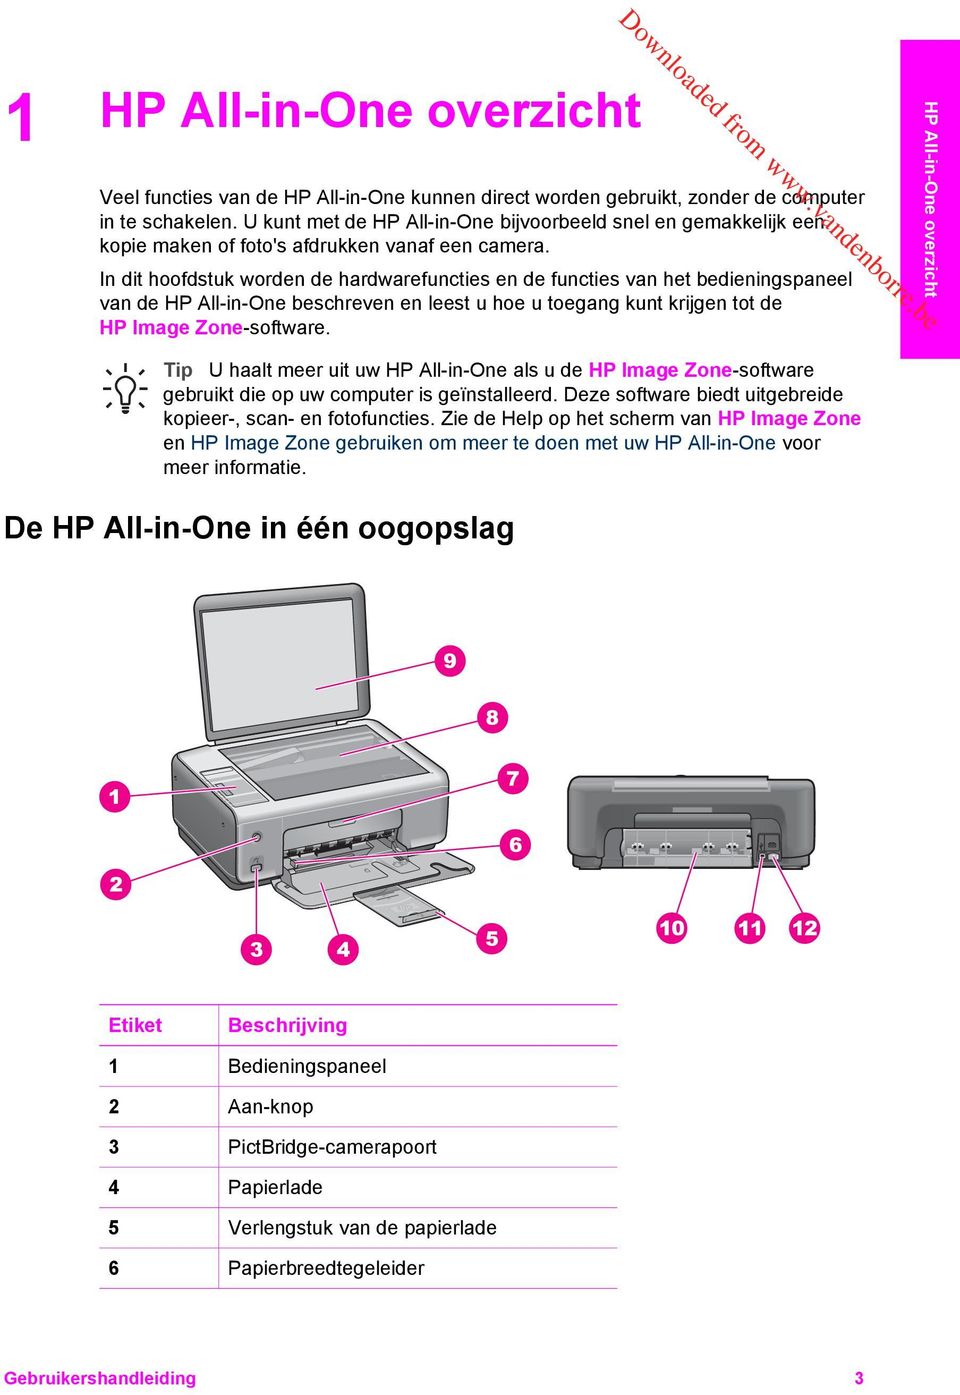 In dit hoofdstuk worden de hardwarefuncties en de functies van het bedieningspaneel van de HP All-in-One beschreven en leest u hoe u toegang kunt krijgen tot de HP Image Zone-software.